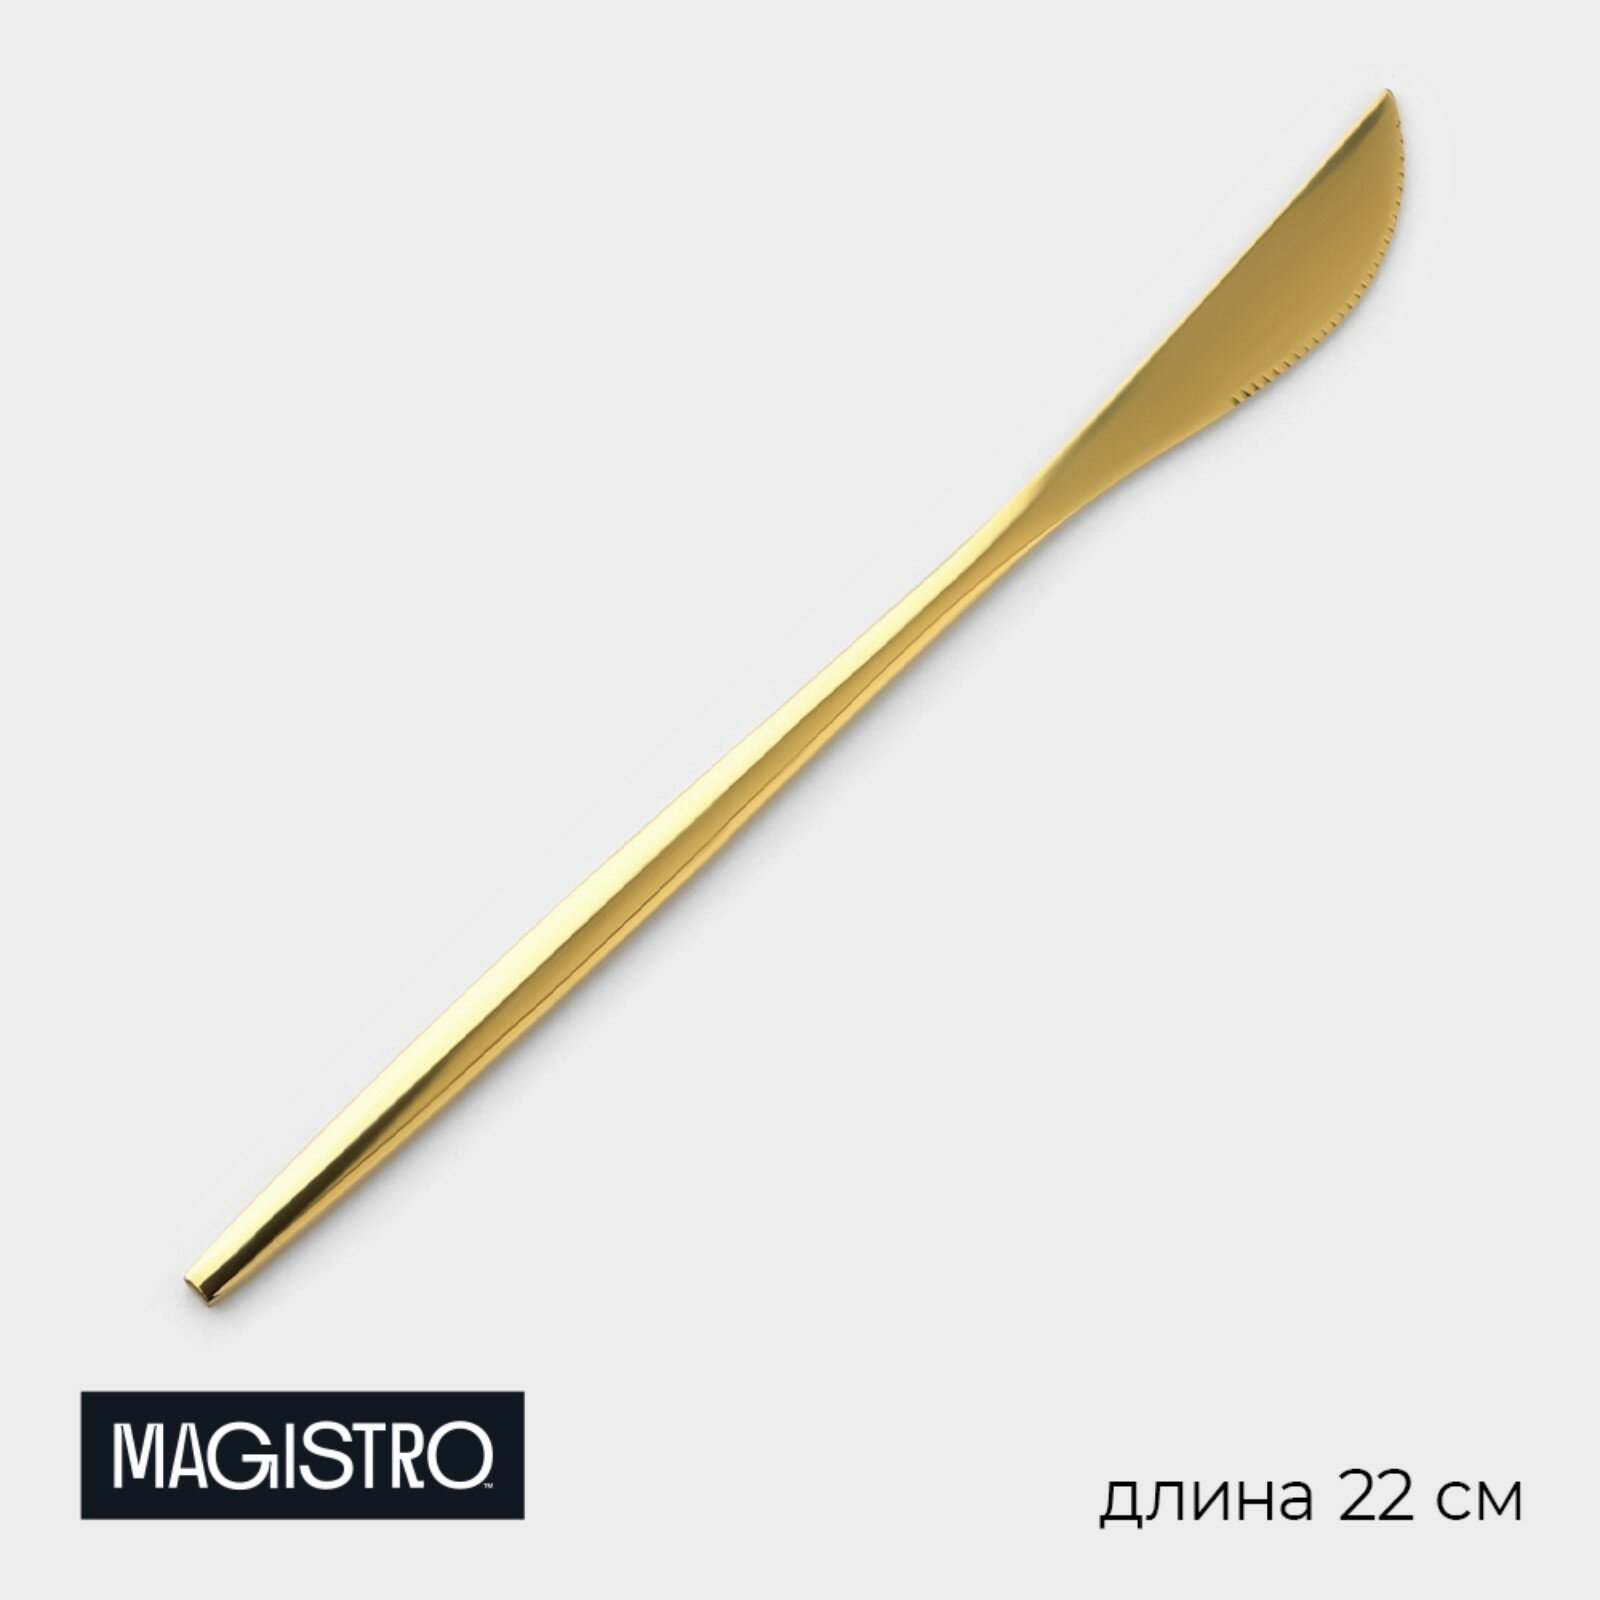 Нож столовый из нержавеющей стали Magistro «Блинк», длина 22 см, на подвесе, цвет золотой